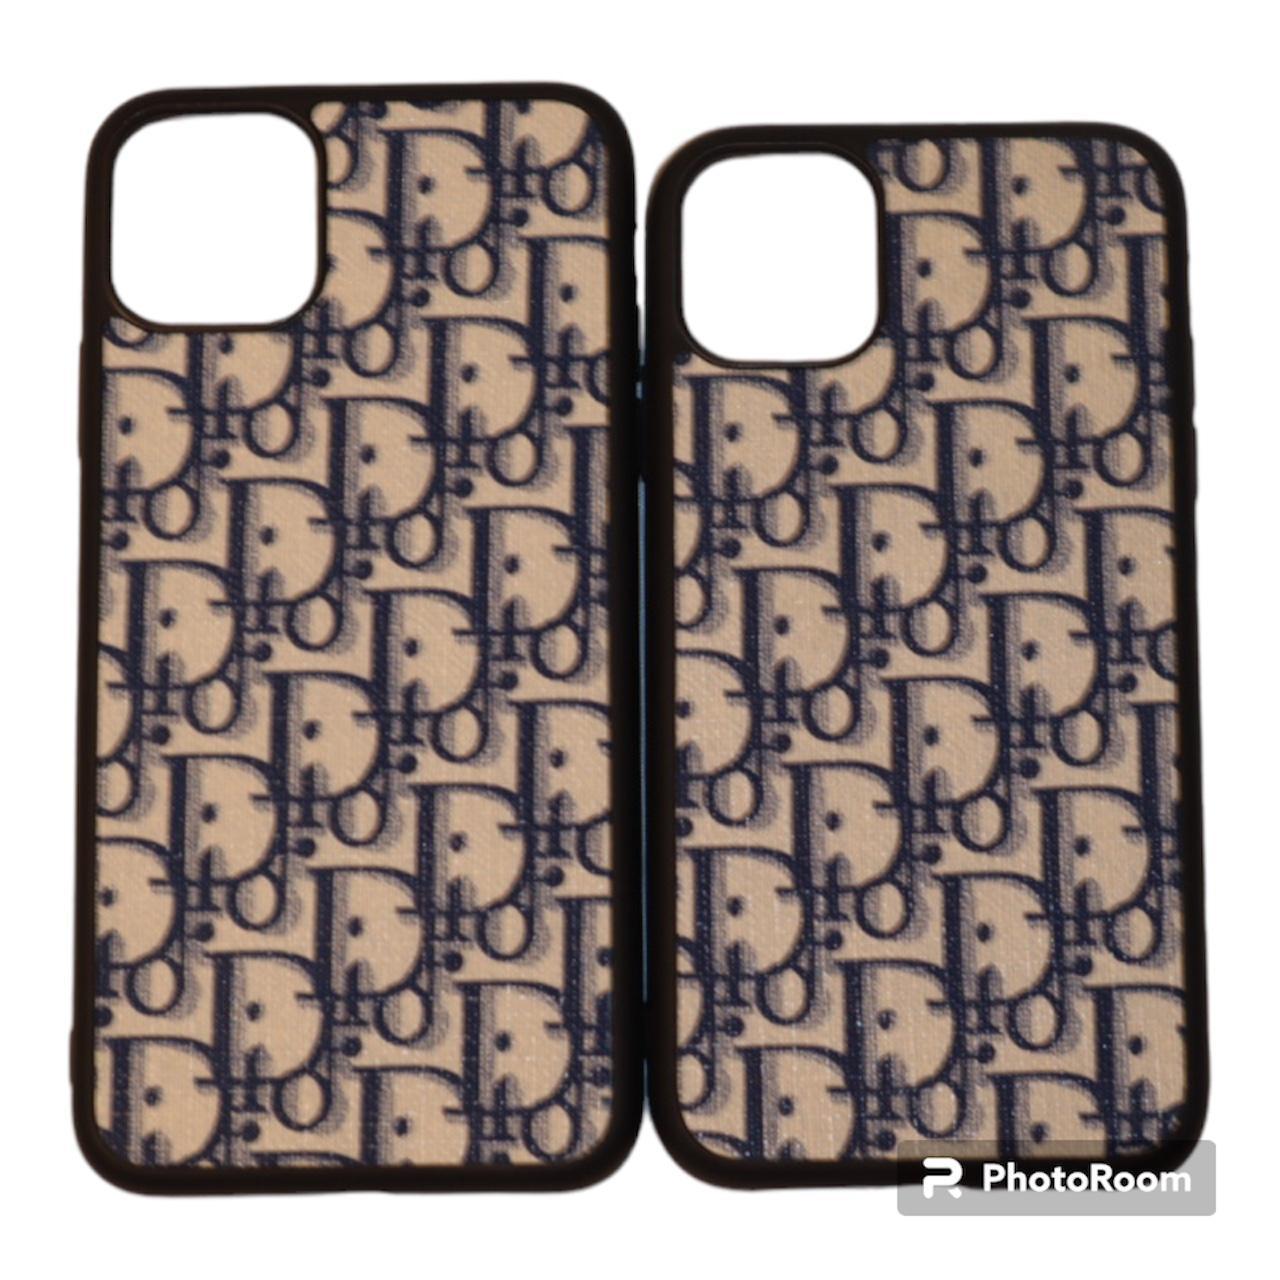 Dior Phone-cases